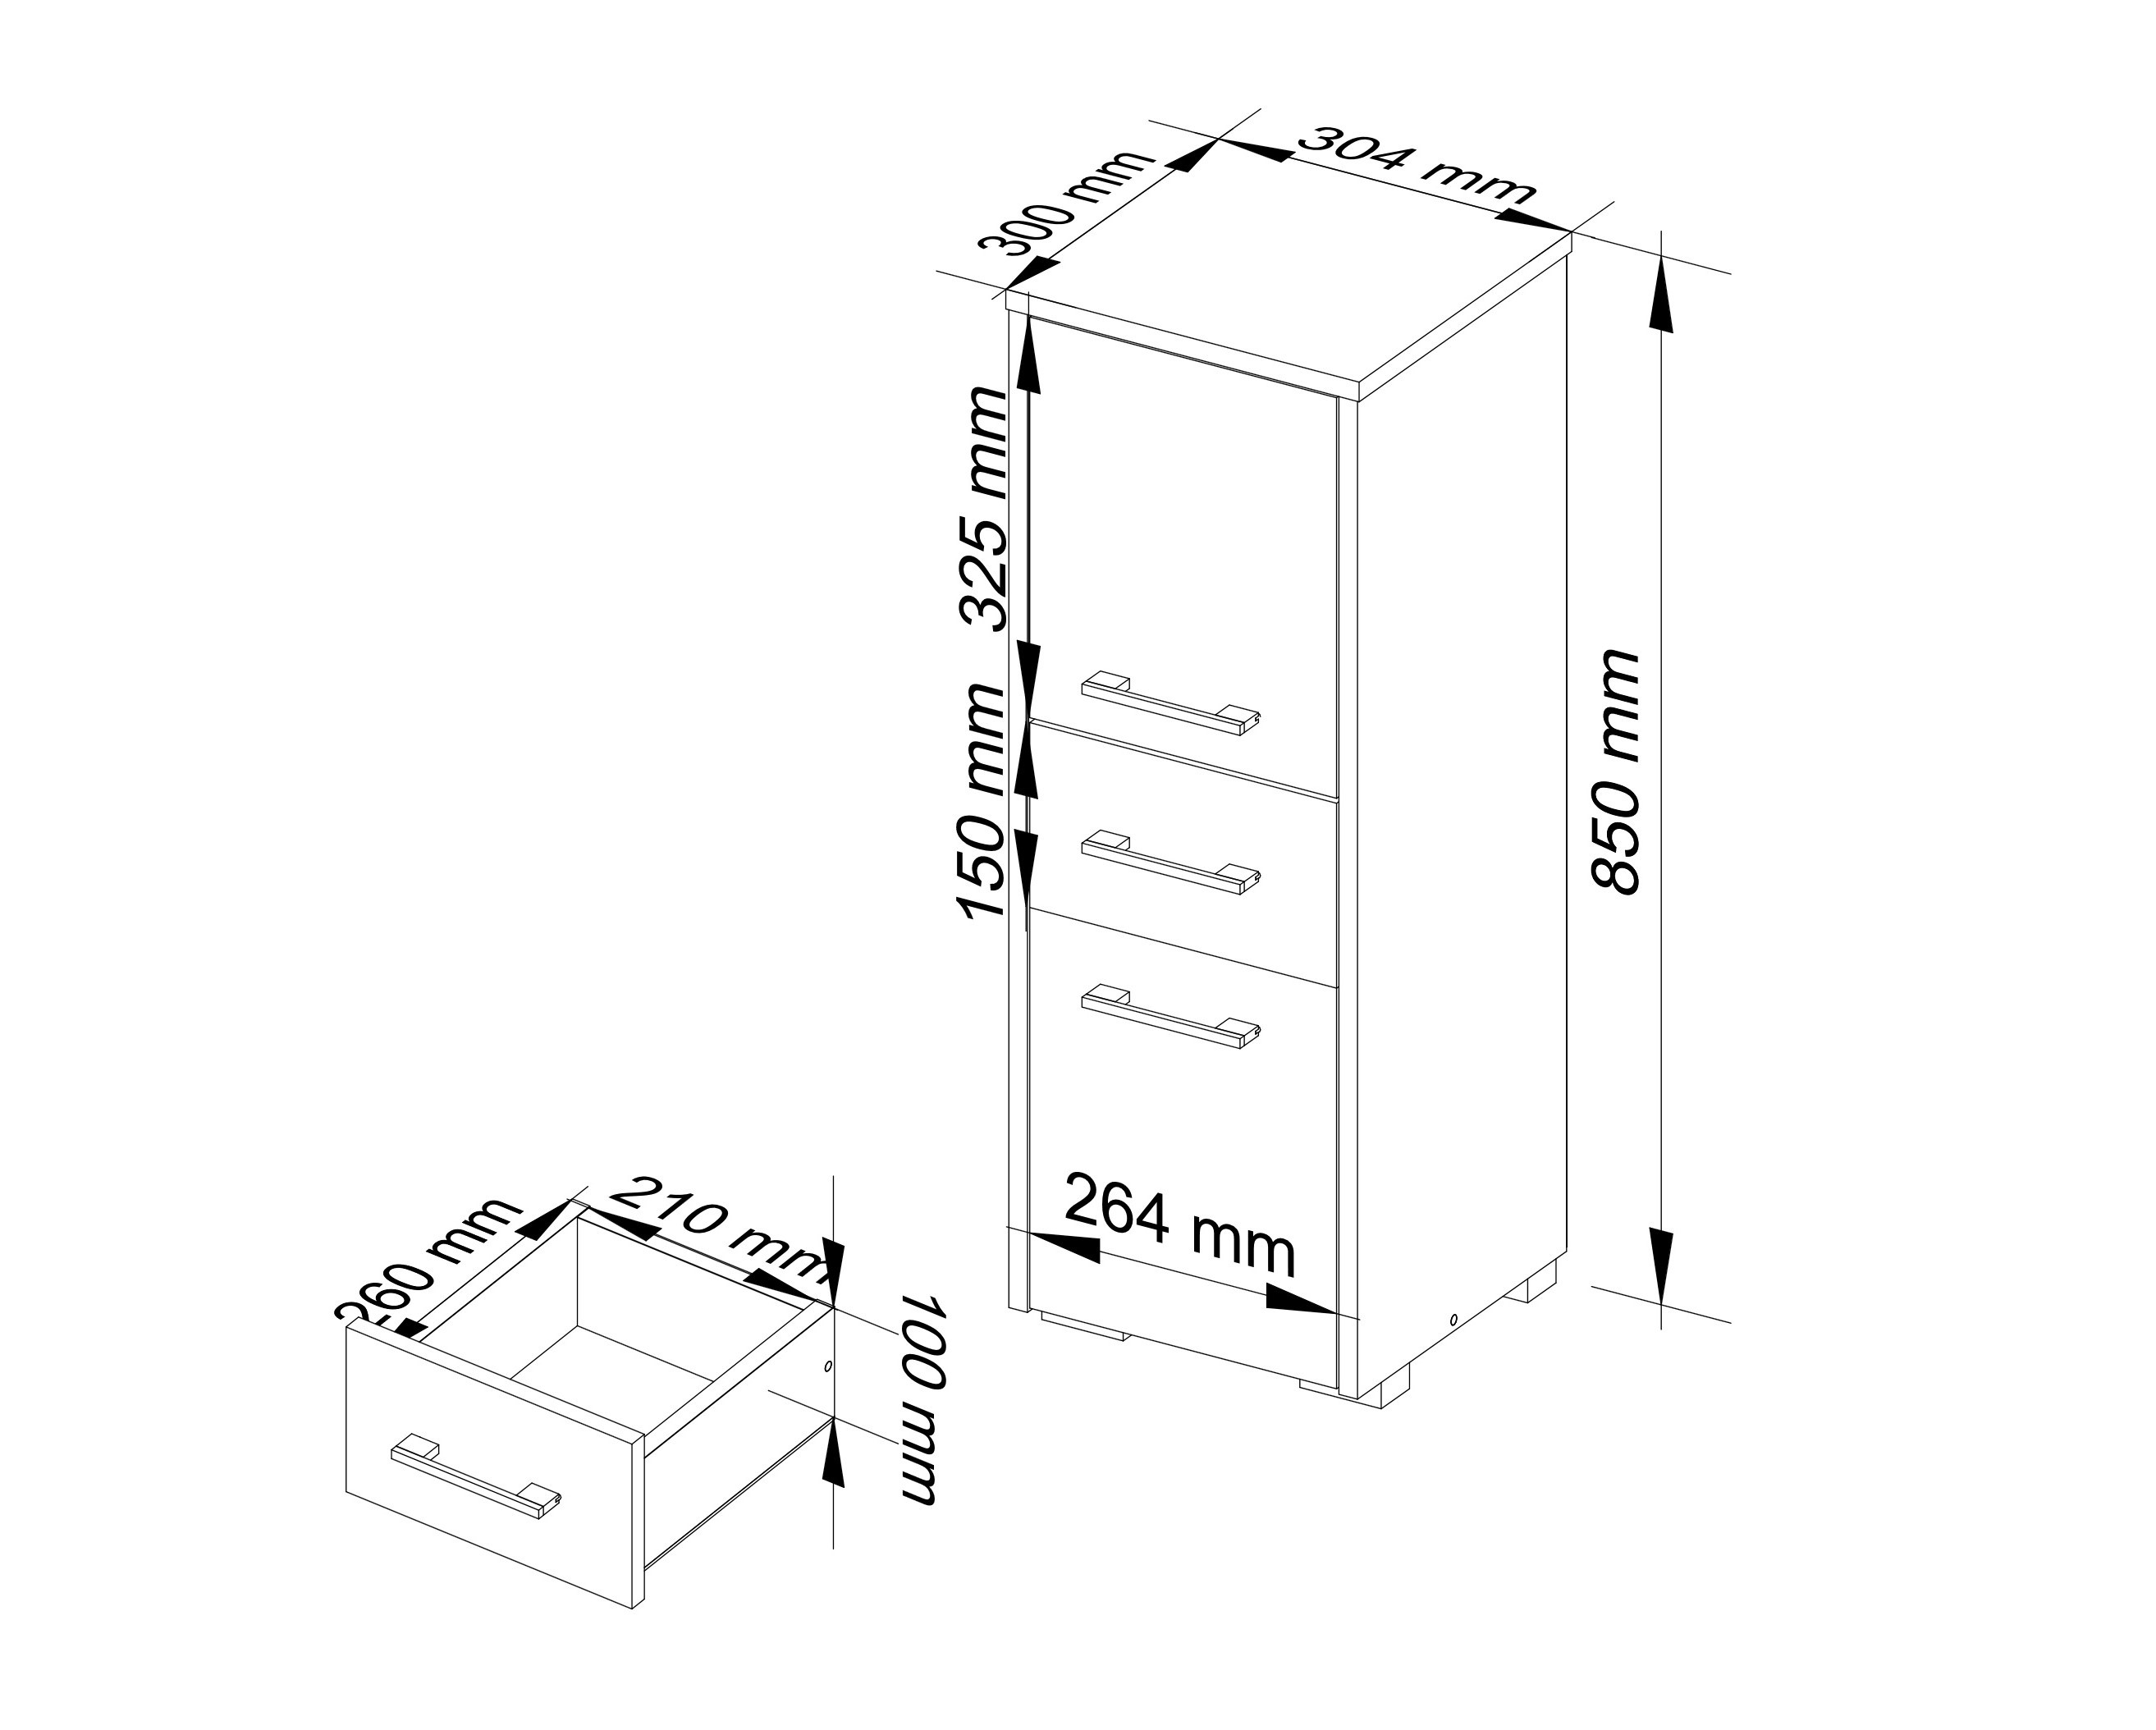 Meble AKORD - Szafka łazienkowa FIN Dąb Sonoma 30 cm 2 drzwi 1 szuflada kolor Wenge mat 3 półki 30x30x85 cm - Wymiary toaletki AKORD - 5907504389059